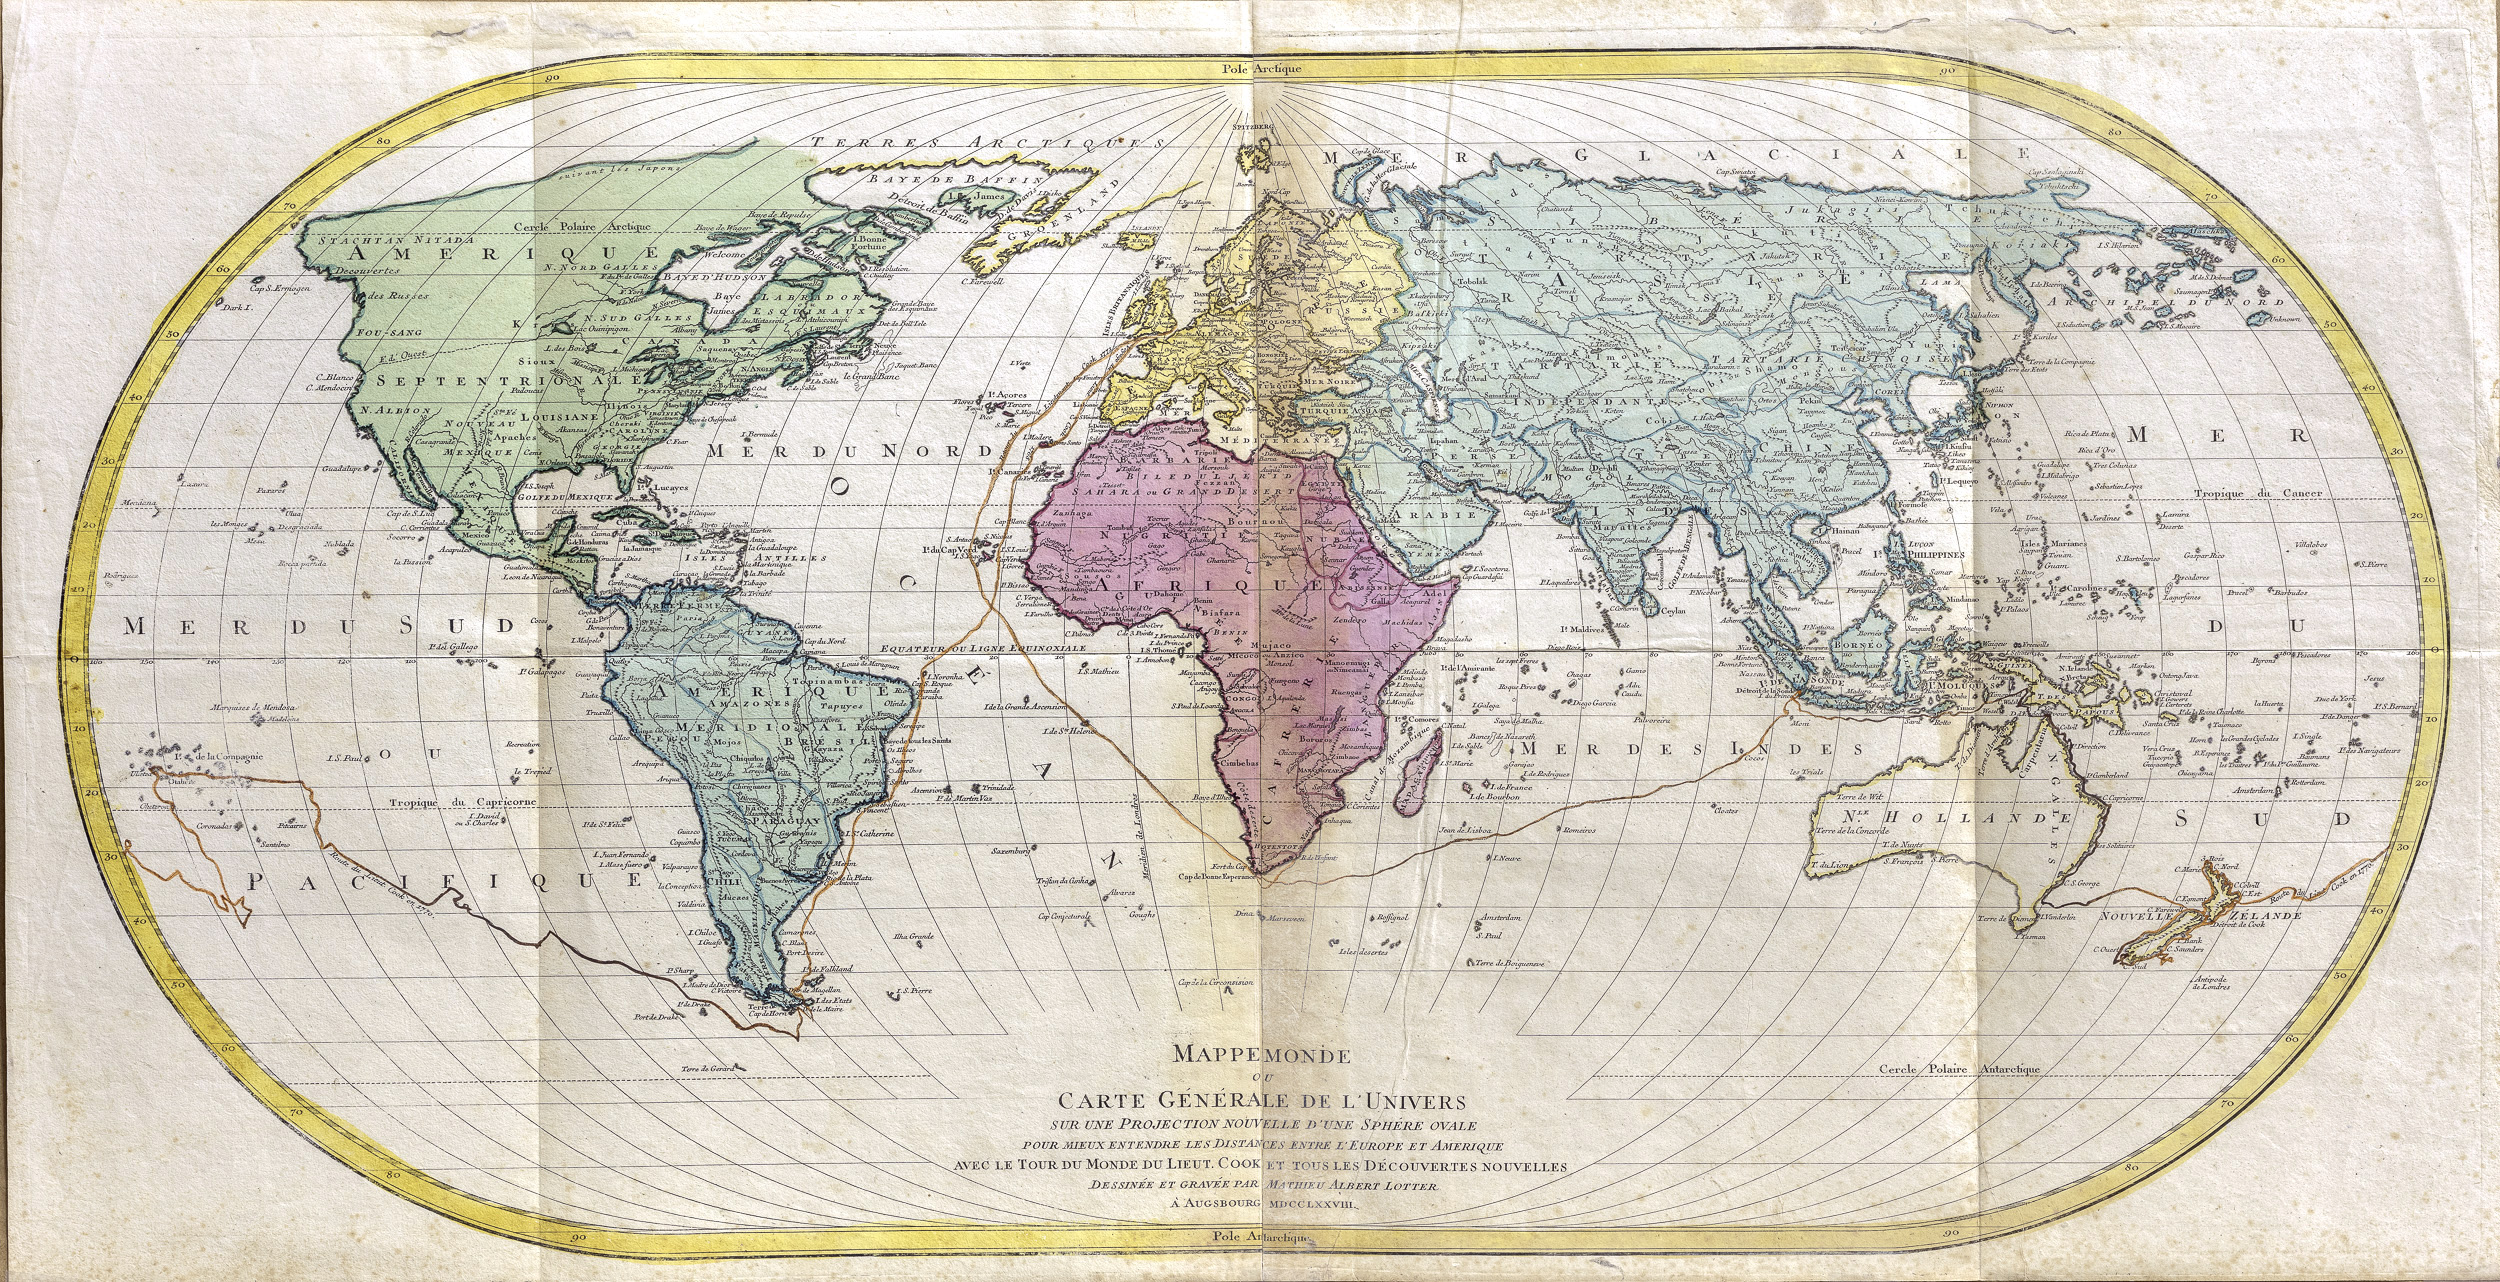 Mappe monde ou carte générale de l’univers sur une projection …